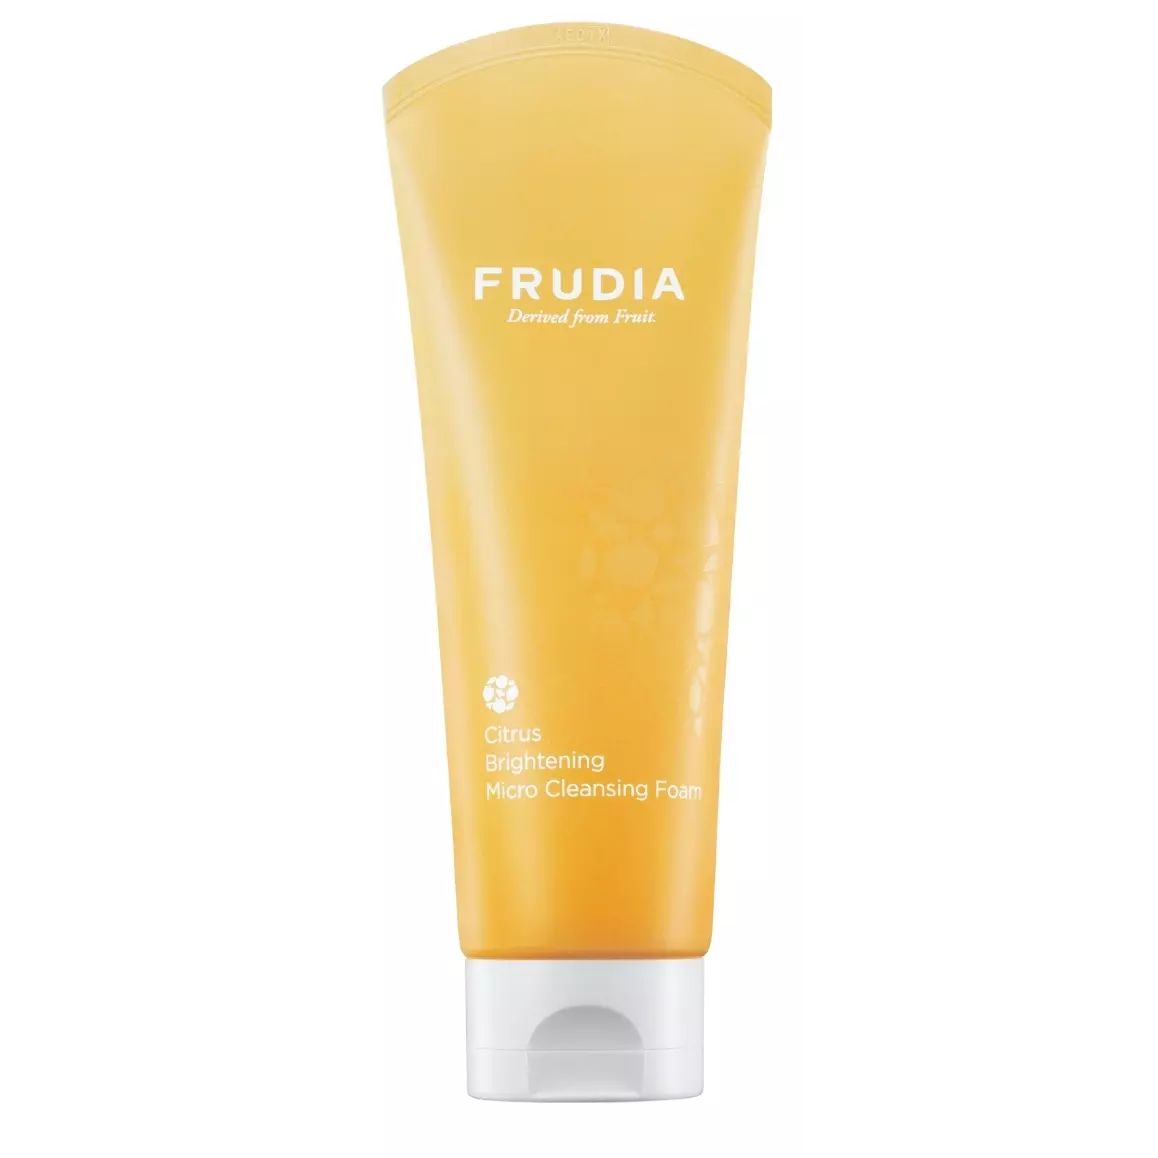 Пенка для умывания FRUDIA Citrus Brightening Micro Cleansing Foam для сияния кожи, 145 мл либридерм пенка для умывания пантенол нежная 160мл